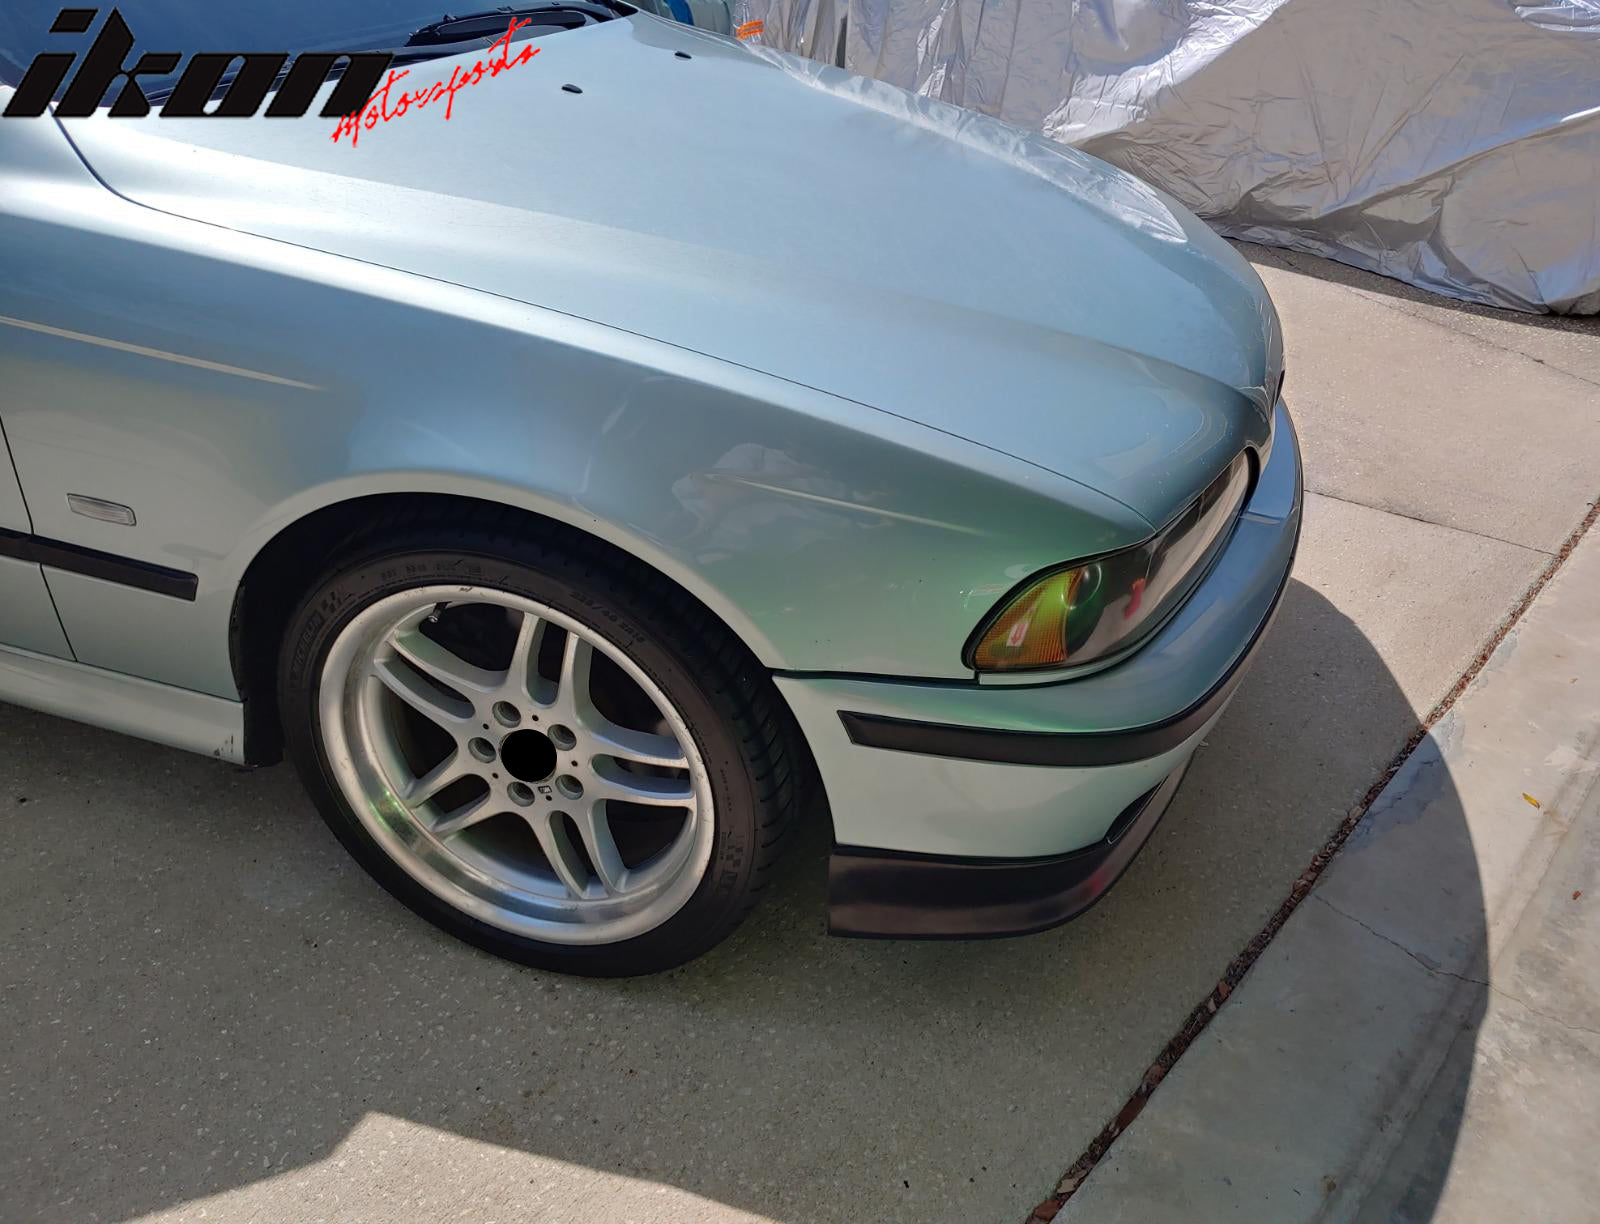 Fits 97-00 BMW E39 5-Series M Style Front Bumper Lip Spoiler Unpainted Black PU